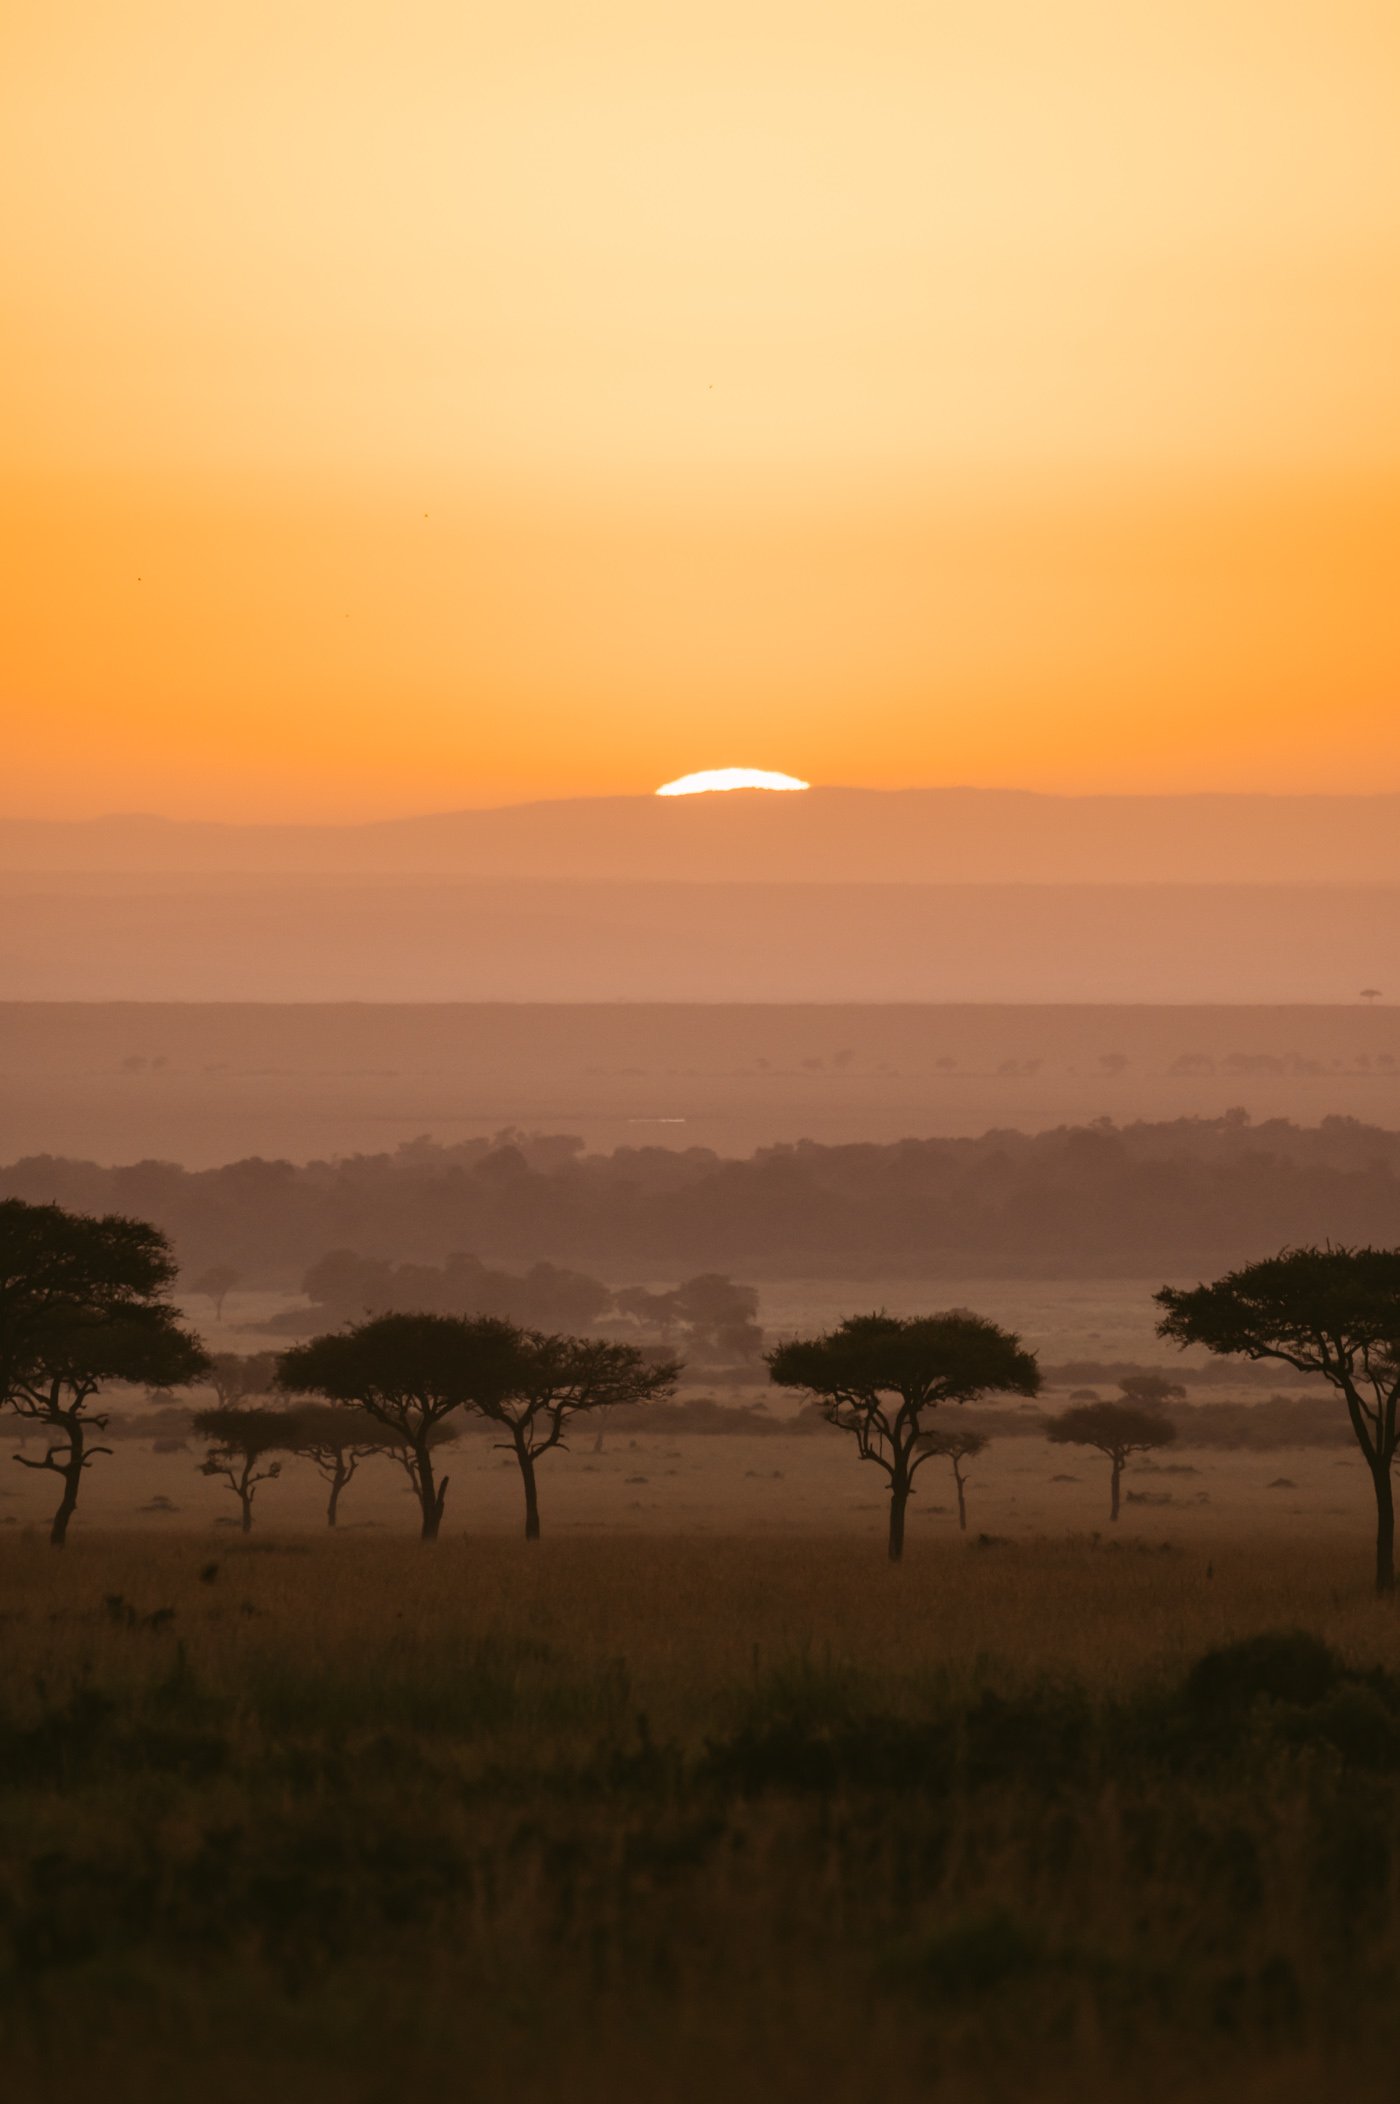 Sunrise in the Mara Triangle in Kenya